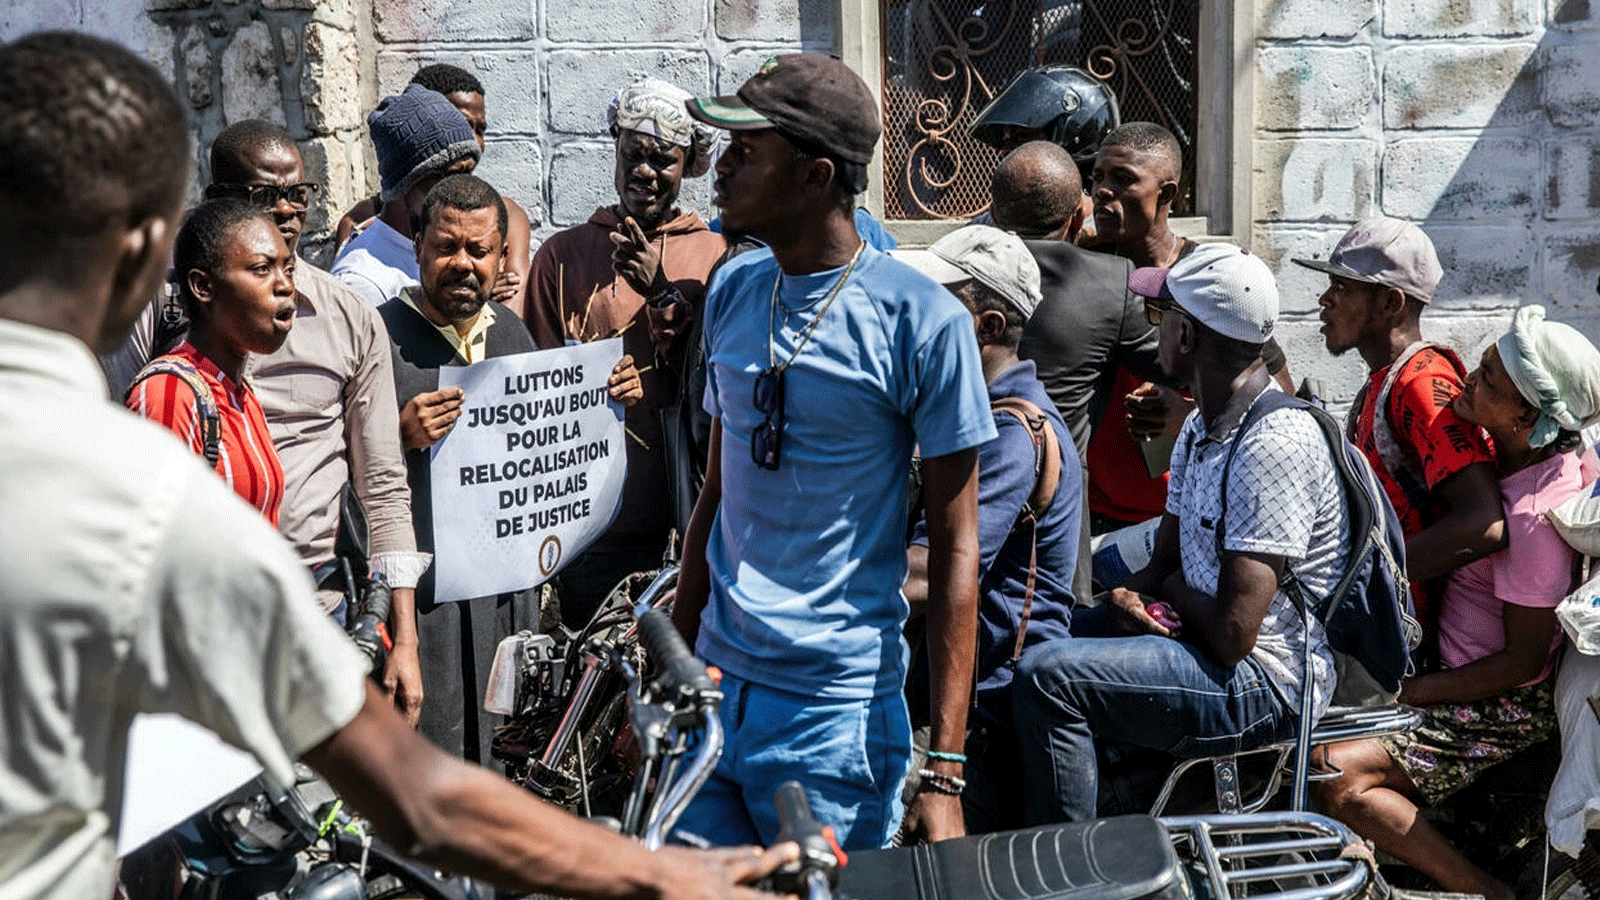  المحامون يغلقون شارعًا أثناء احتجاجهم خارج منزل رئيس الوزراء أرييل هنري الخاص لإجبار الحكومة على نقل المحكمة المدنية إلى منطقة أكثر أمانًا، في بورت أو برنس، هايتي في نيسان\أبريل 2022